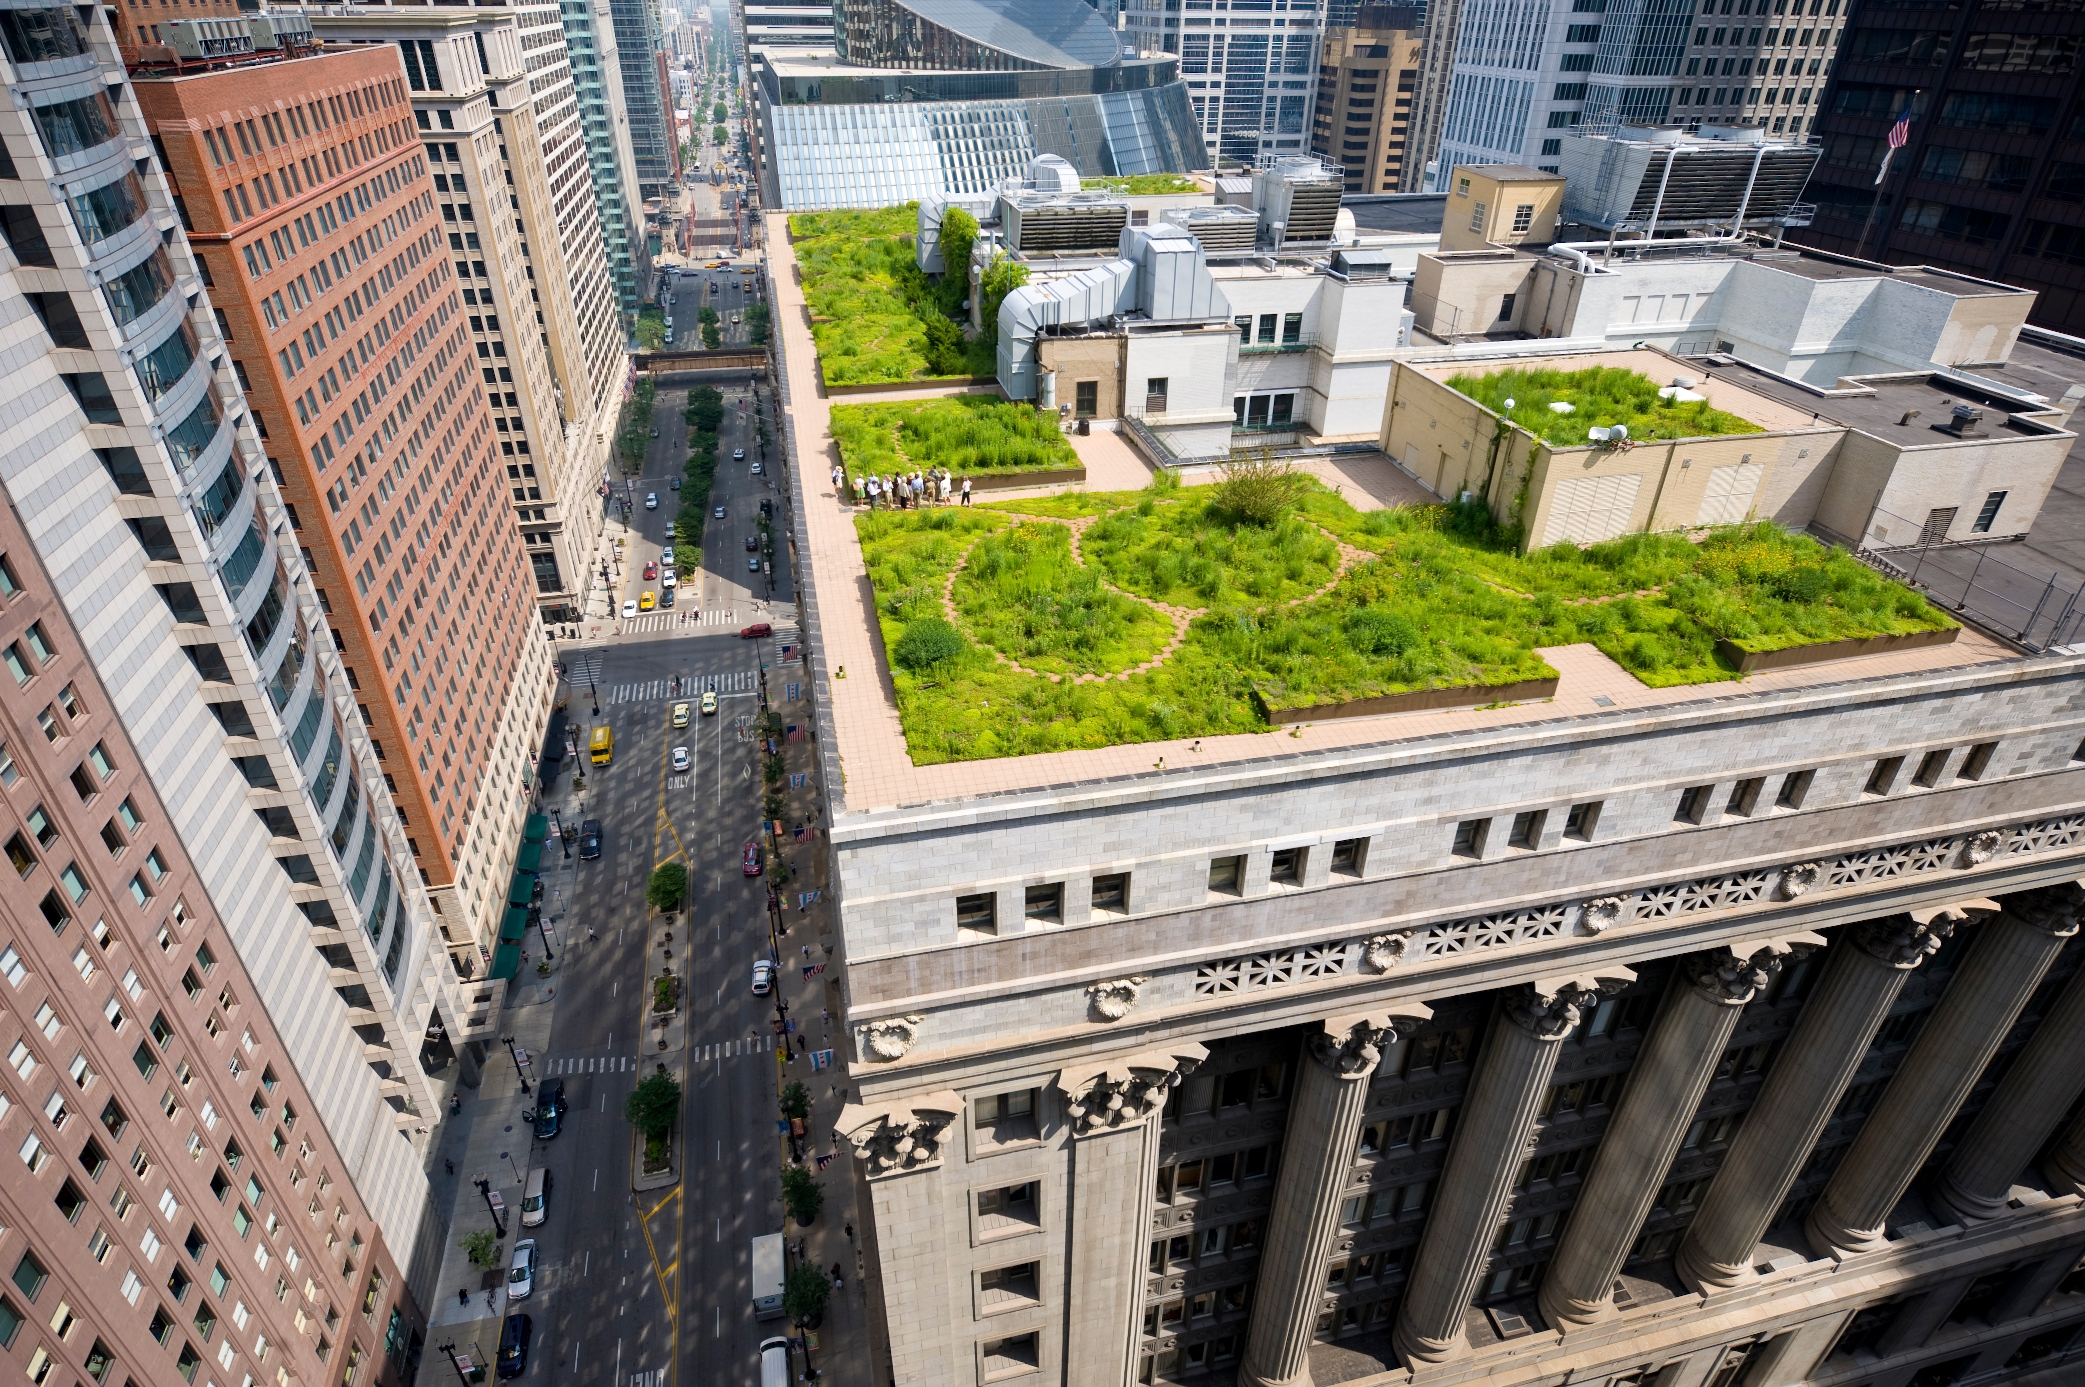 Зеленая крыша читать. City Hall Rooftop Garden: зеленая крыша в Чикаго. Зеленая крыша здания Сити Холл Чикаго. City Hall в Чикаго сад на крыше. Сити Холл Чикаго.